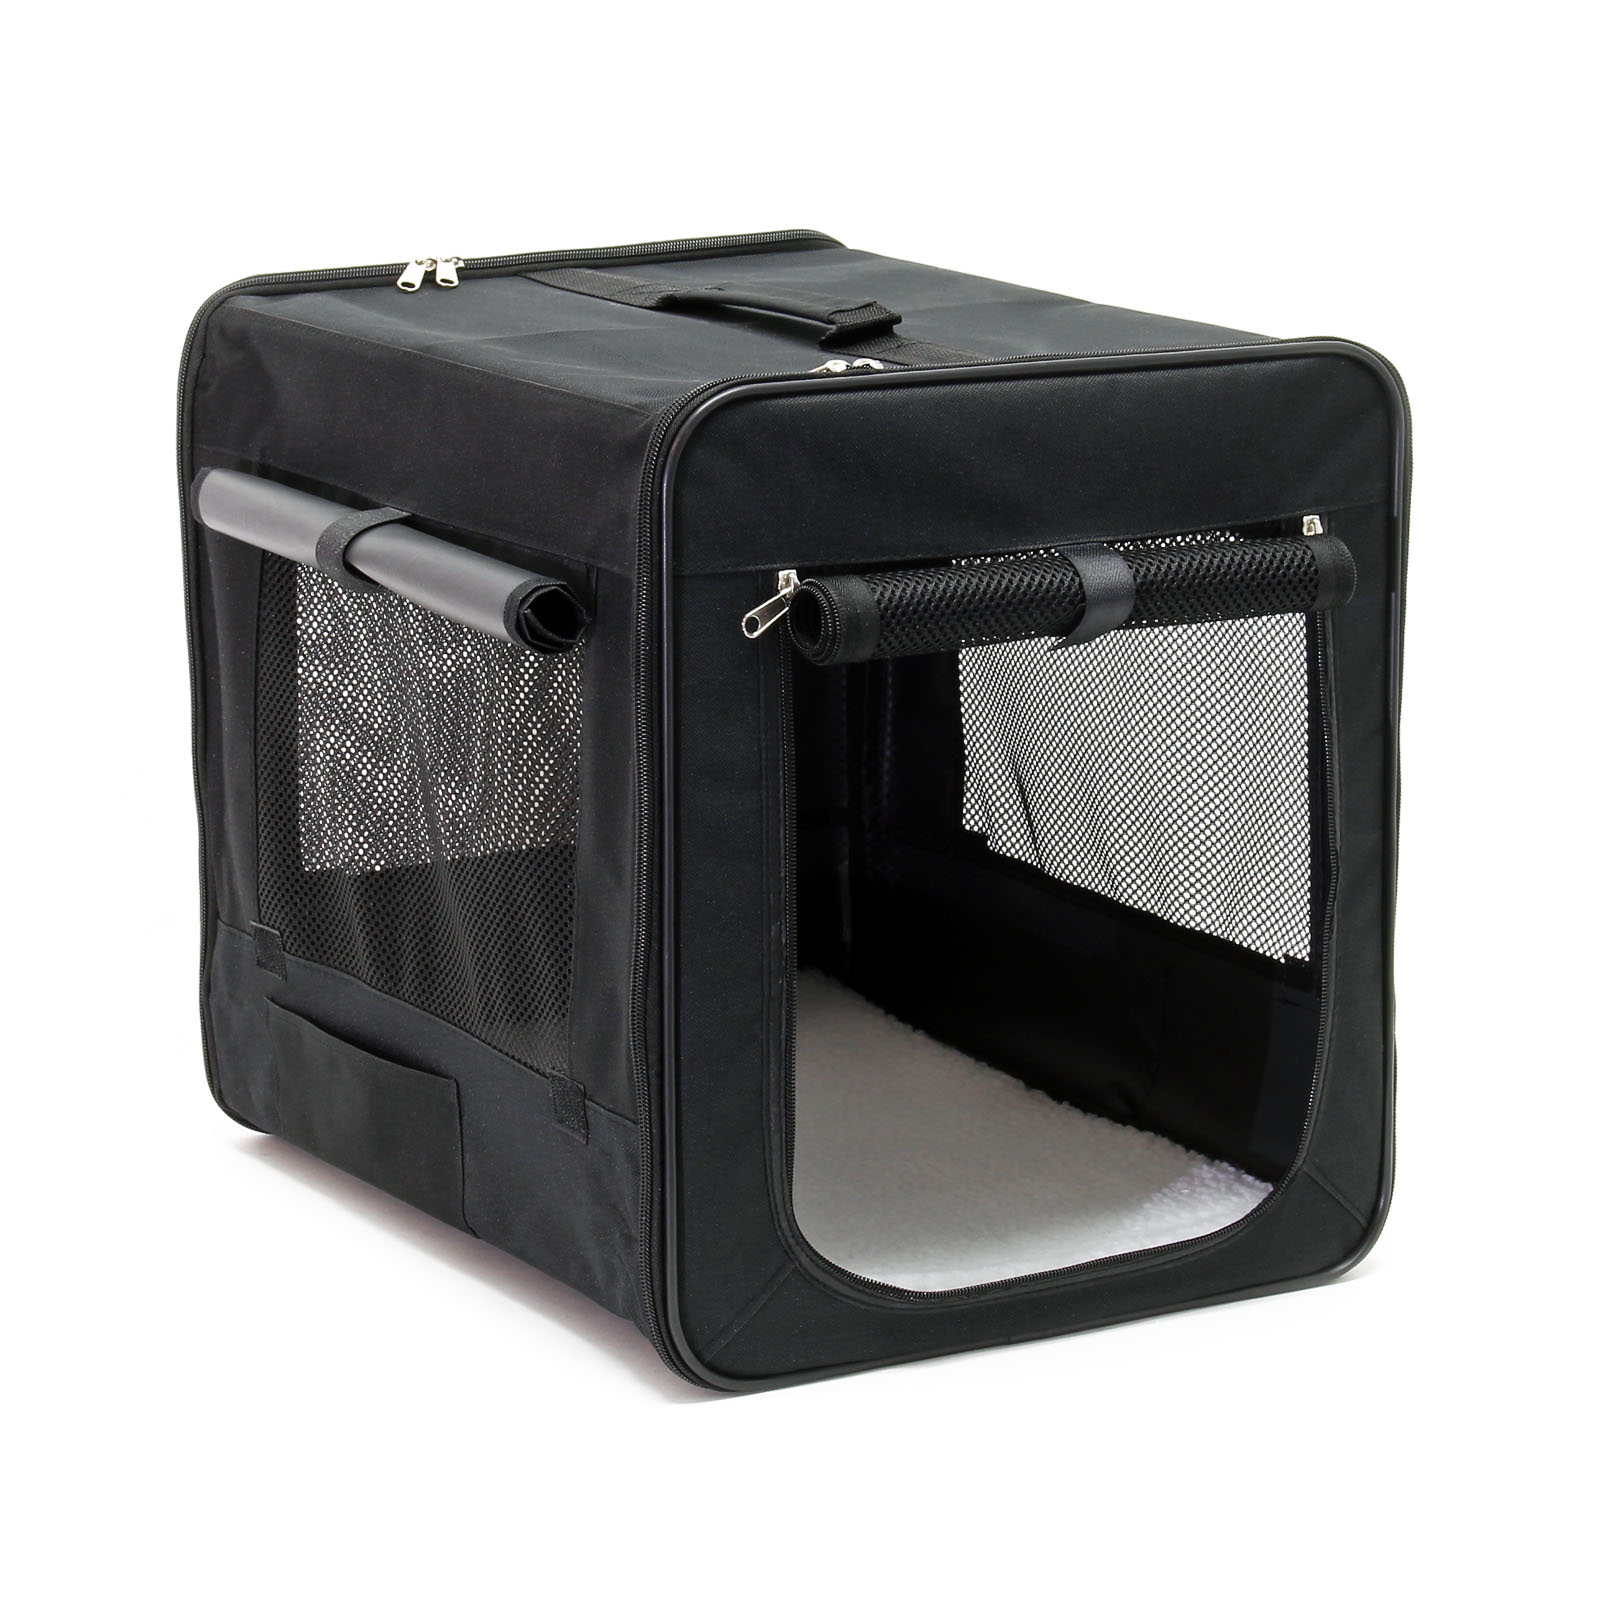 Faltbare Transportbox für Haustiere, Größe S (42x36x41 cm), Reisebox